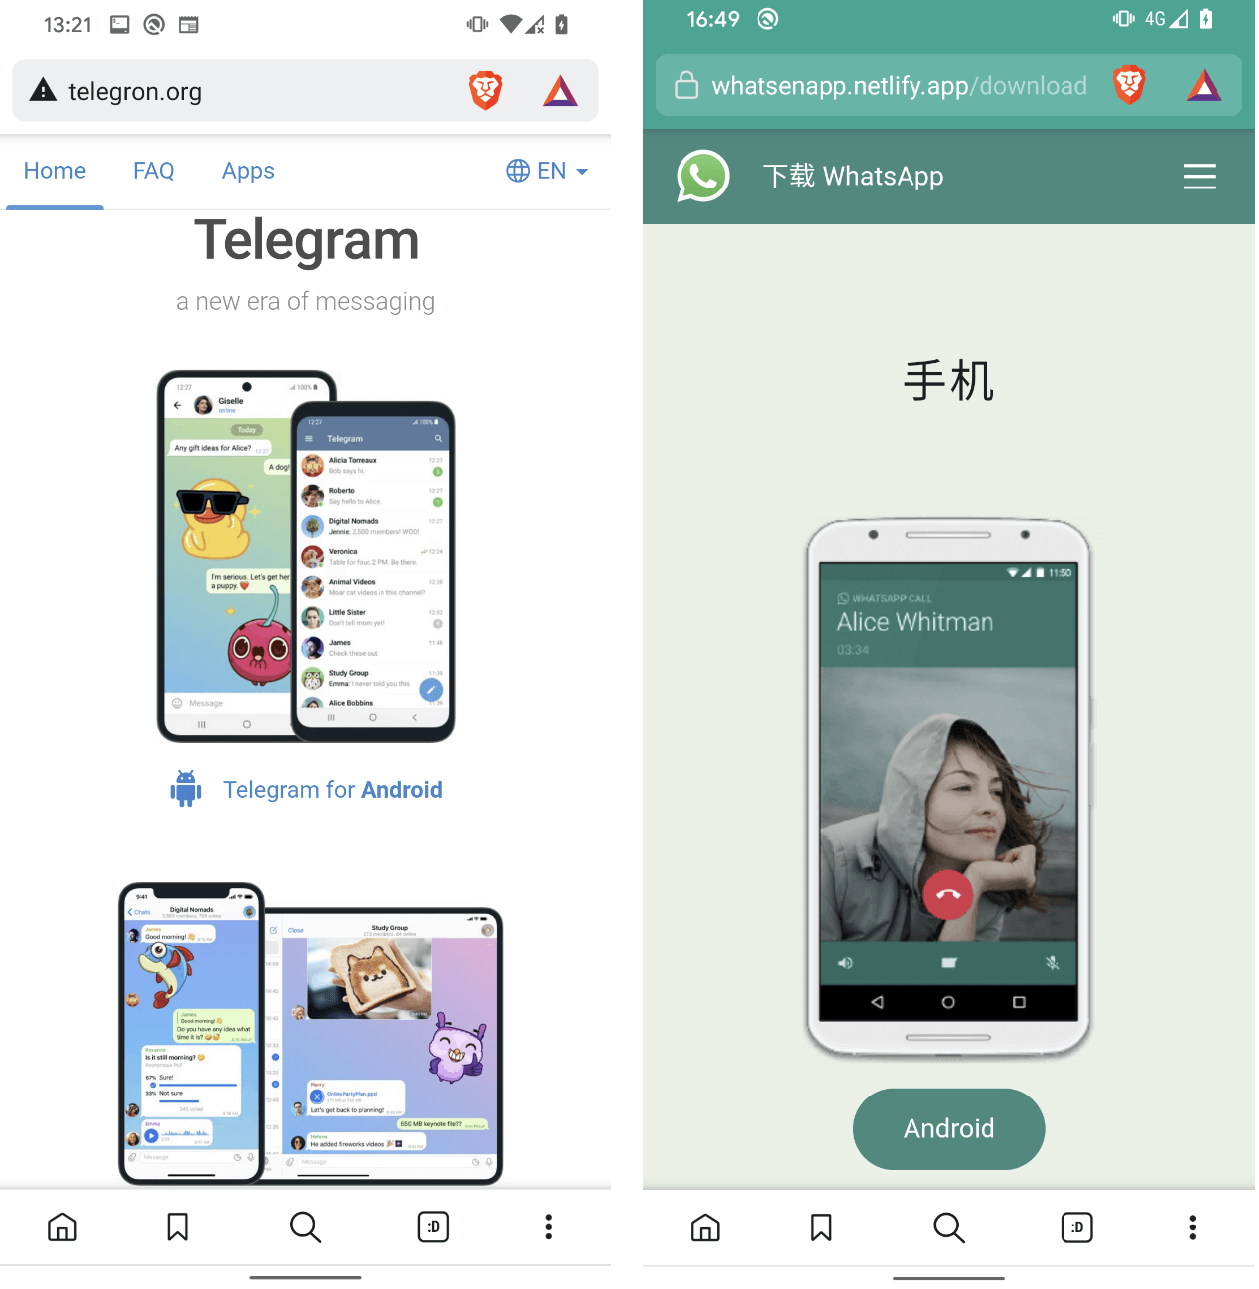 그림 1. Telegram 및 WhatsApp을 모방한 웹사이트